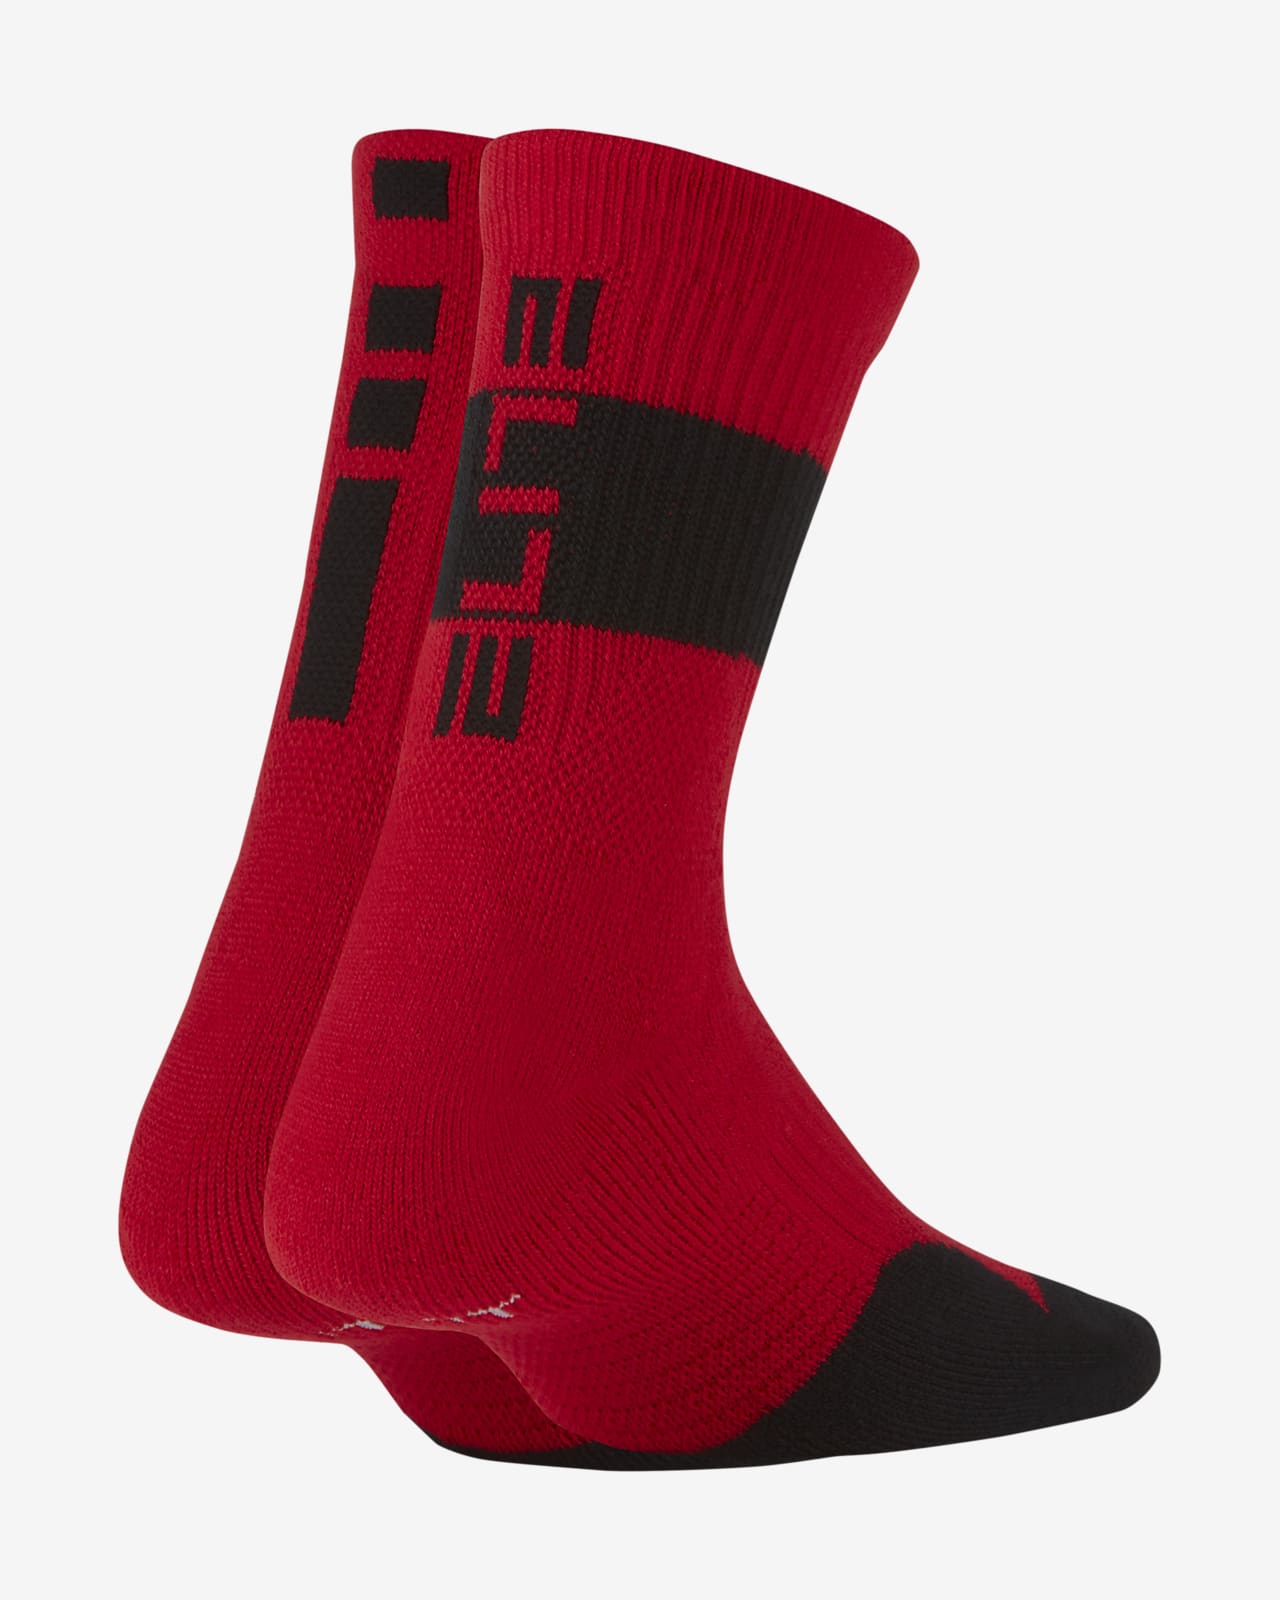 Elite Little Kids' Crew Socks Nike.com